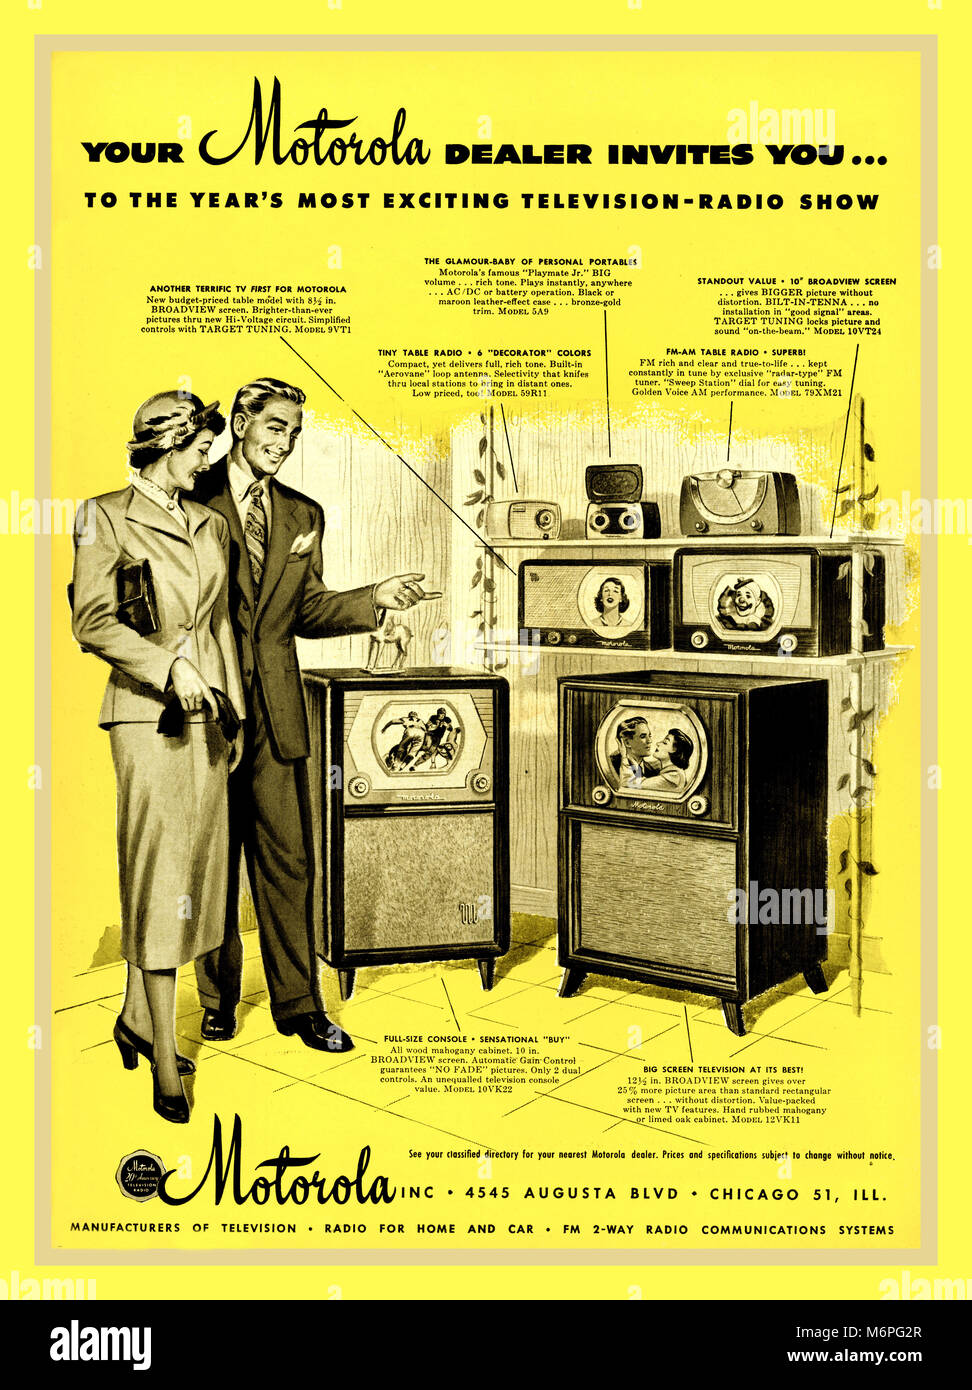 Vintage des années 40, la télévision/radio Motorola appuyez sur la publicité pour la télévision radio show 1949 Banque D'Images